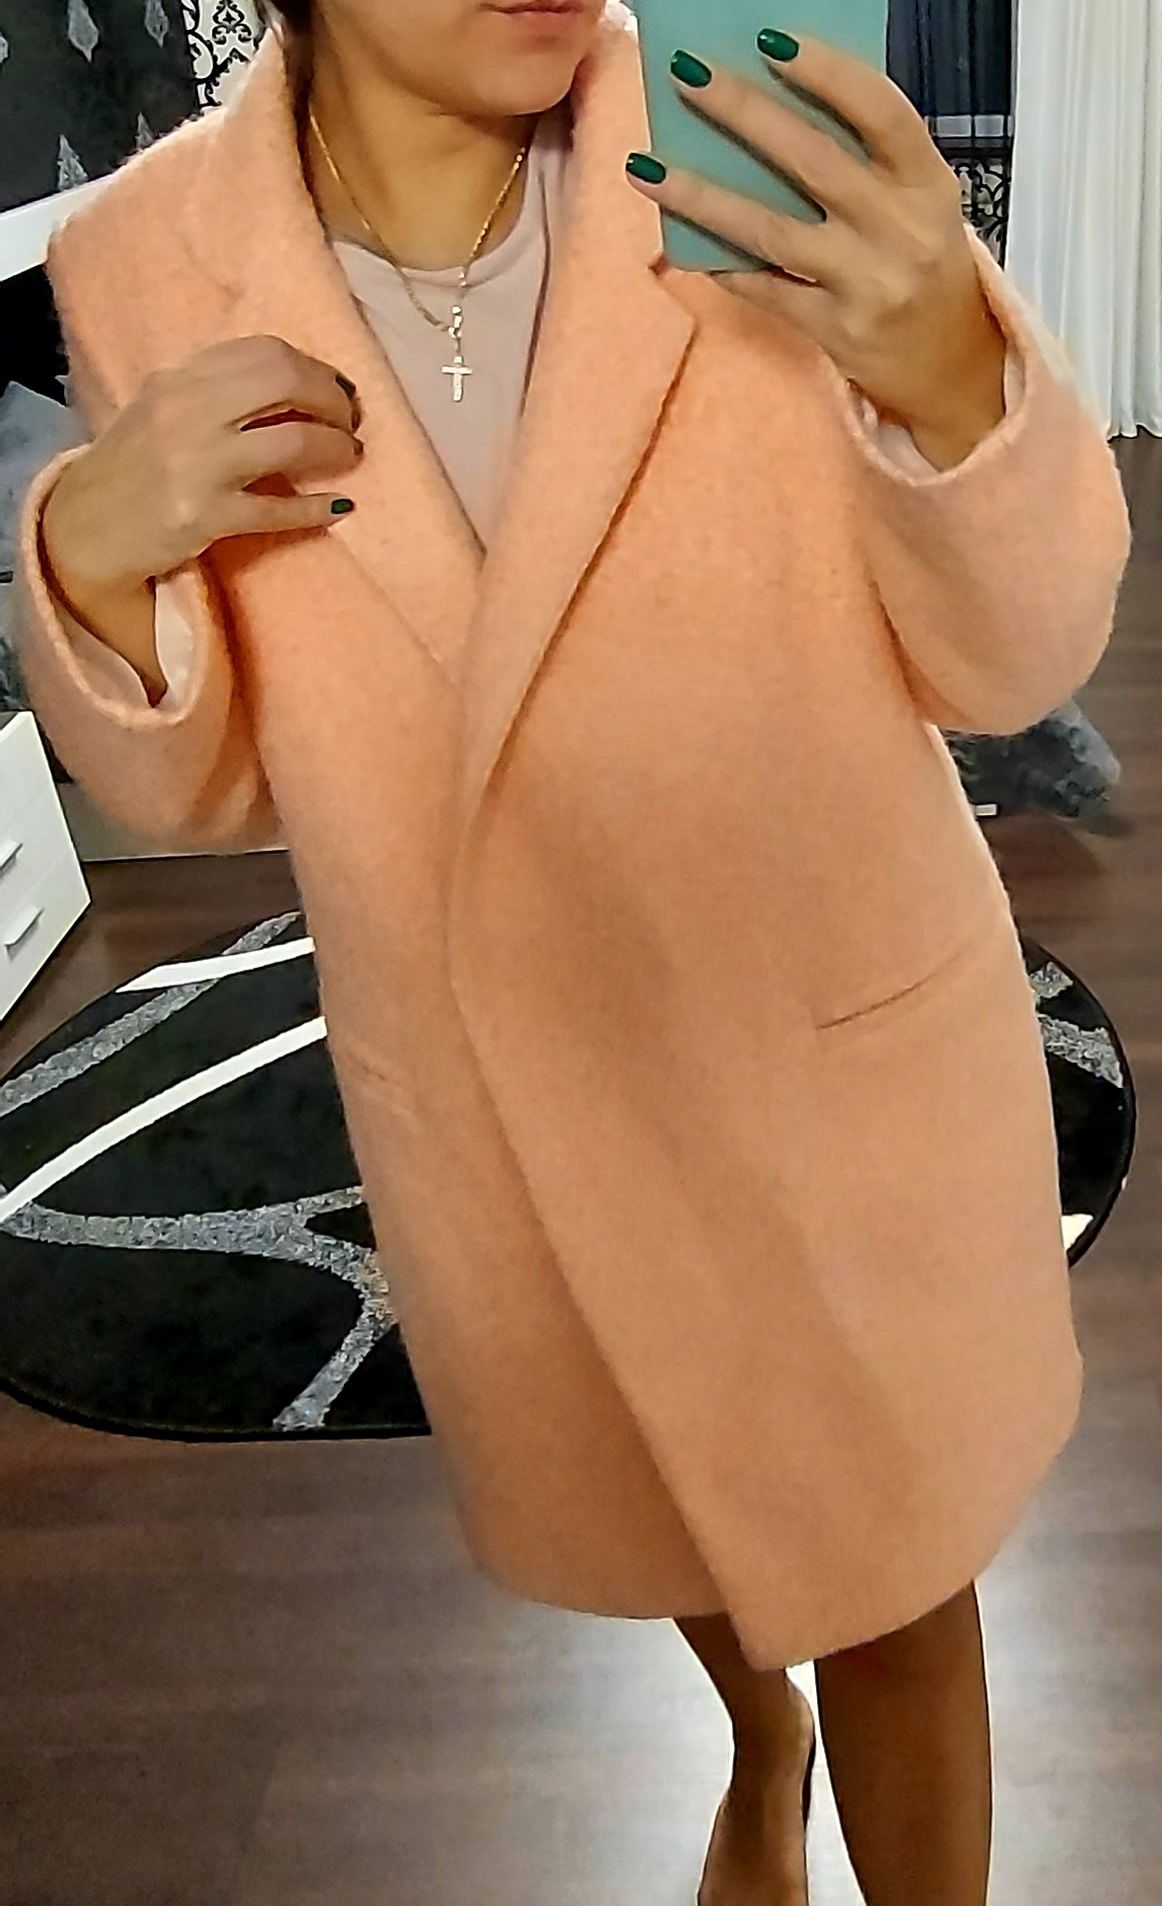 Пальто женское новое